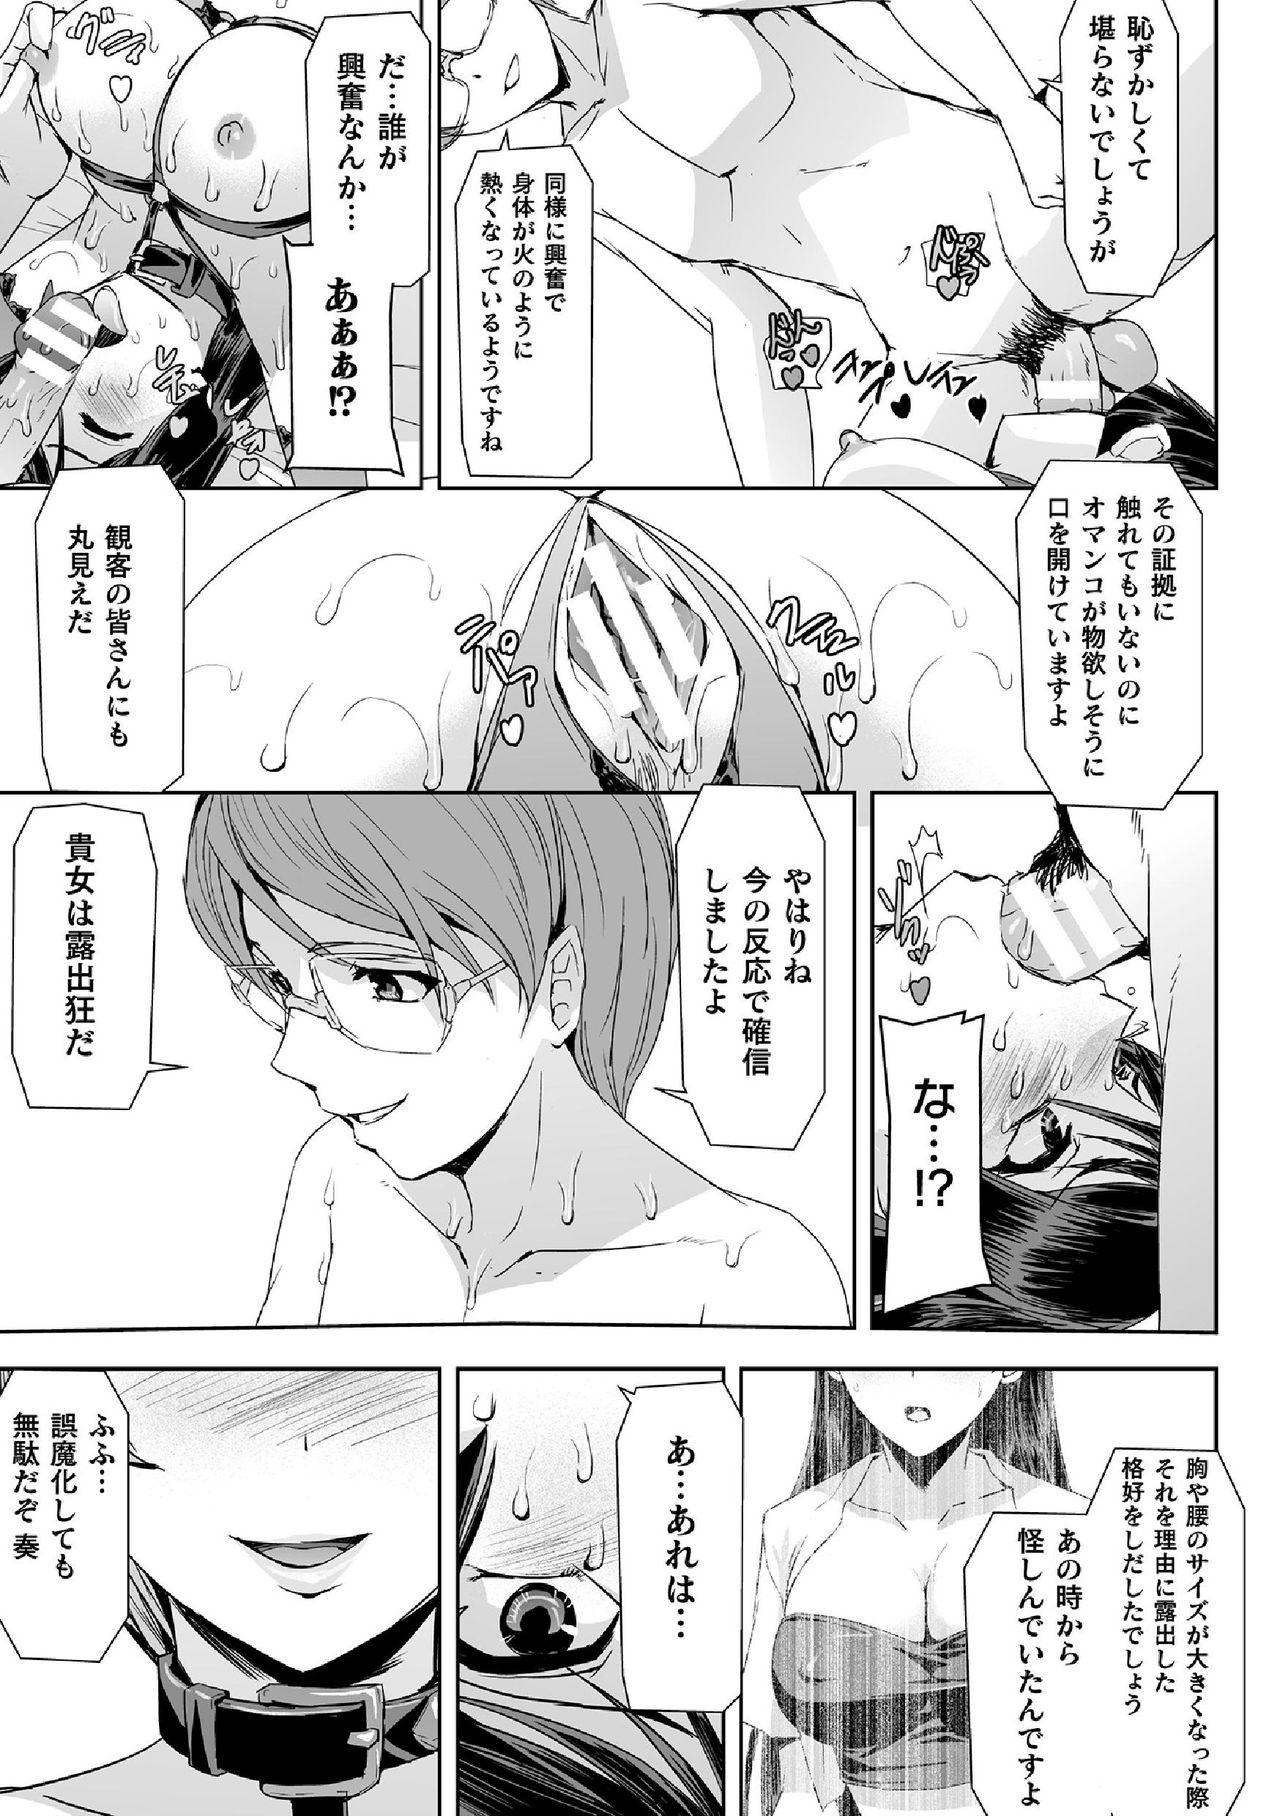 The Haiboku Otome Ecstasy Vol. 14 Pija - Page 11